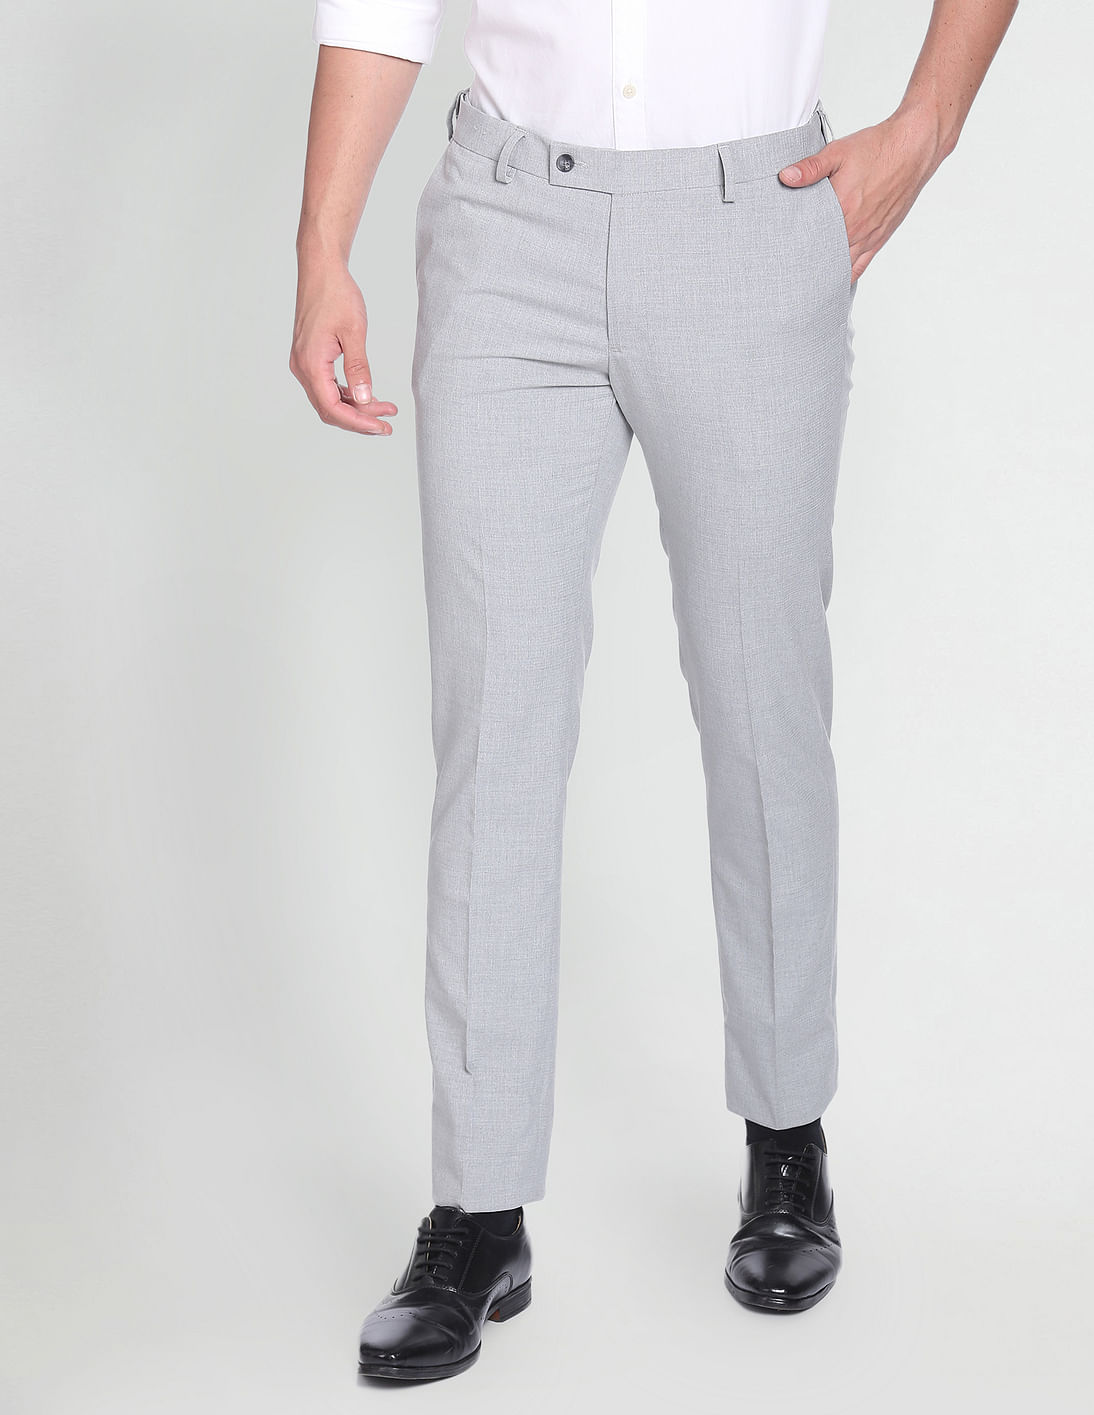 Buy Arrow Dobby Formal Trousers - NNNOW.com